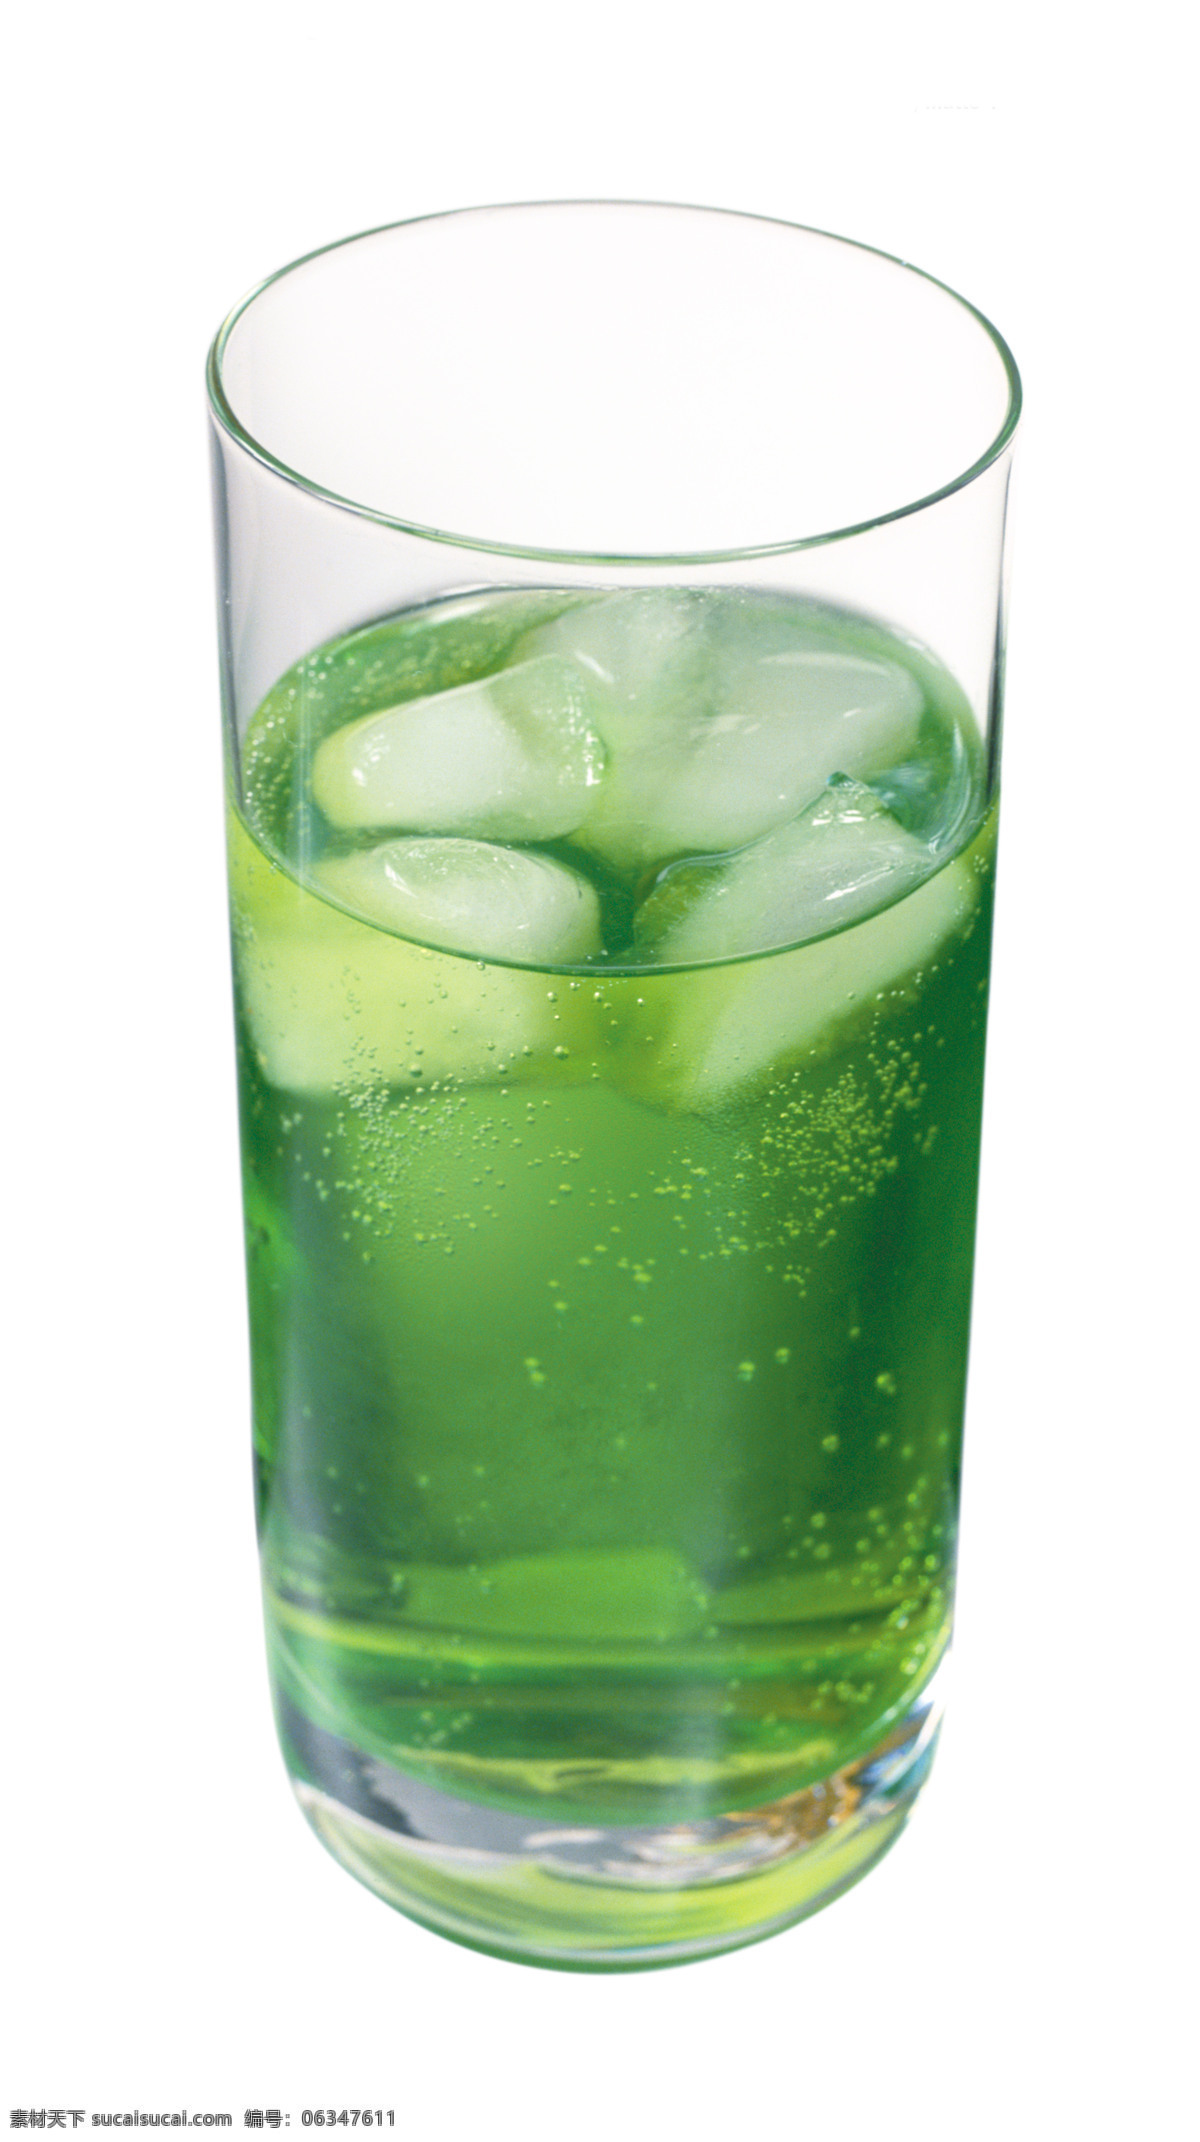 蔬菜汁 青瓜汁 青苹果汁 绿色食品 绿色饮料 绿色 绿色果汁 水果汁 鲜榨果汁 果汁 冰块 饮品 水果 玻璃杯 饮料 夏日饮品 饮料酒水 餐饮美食